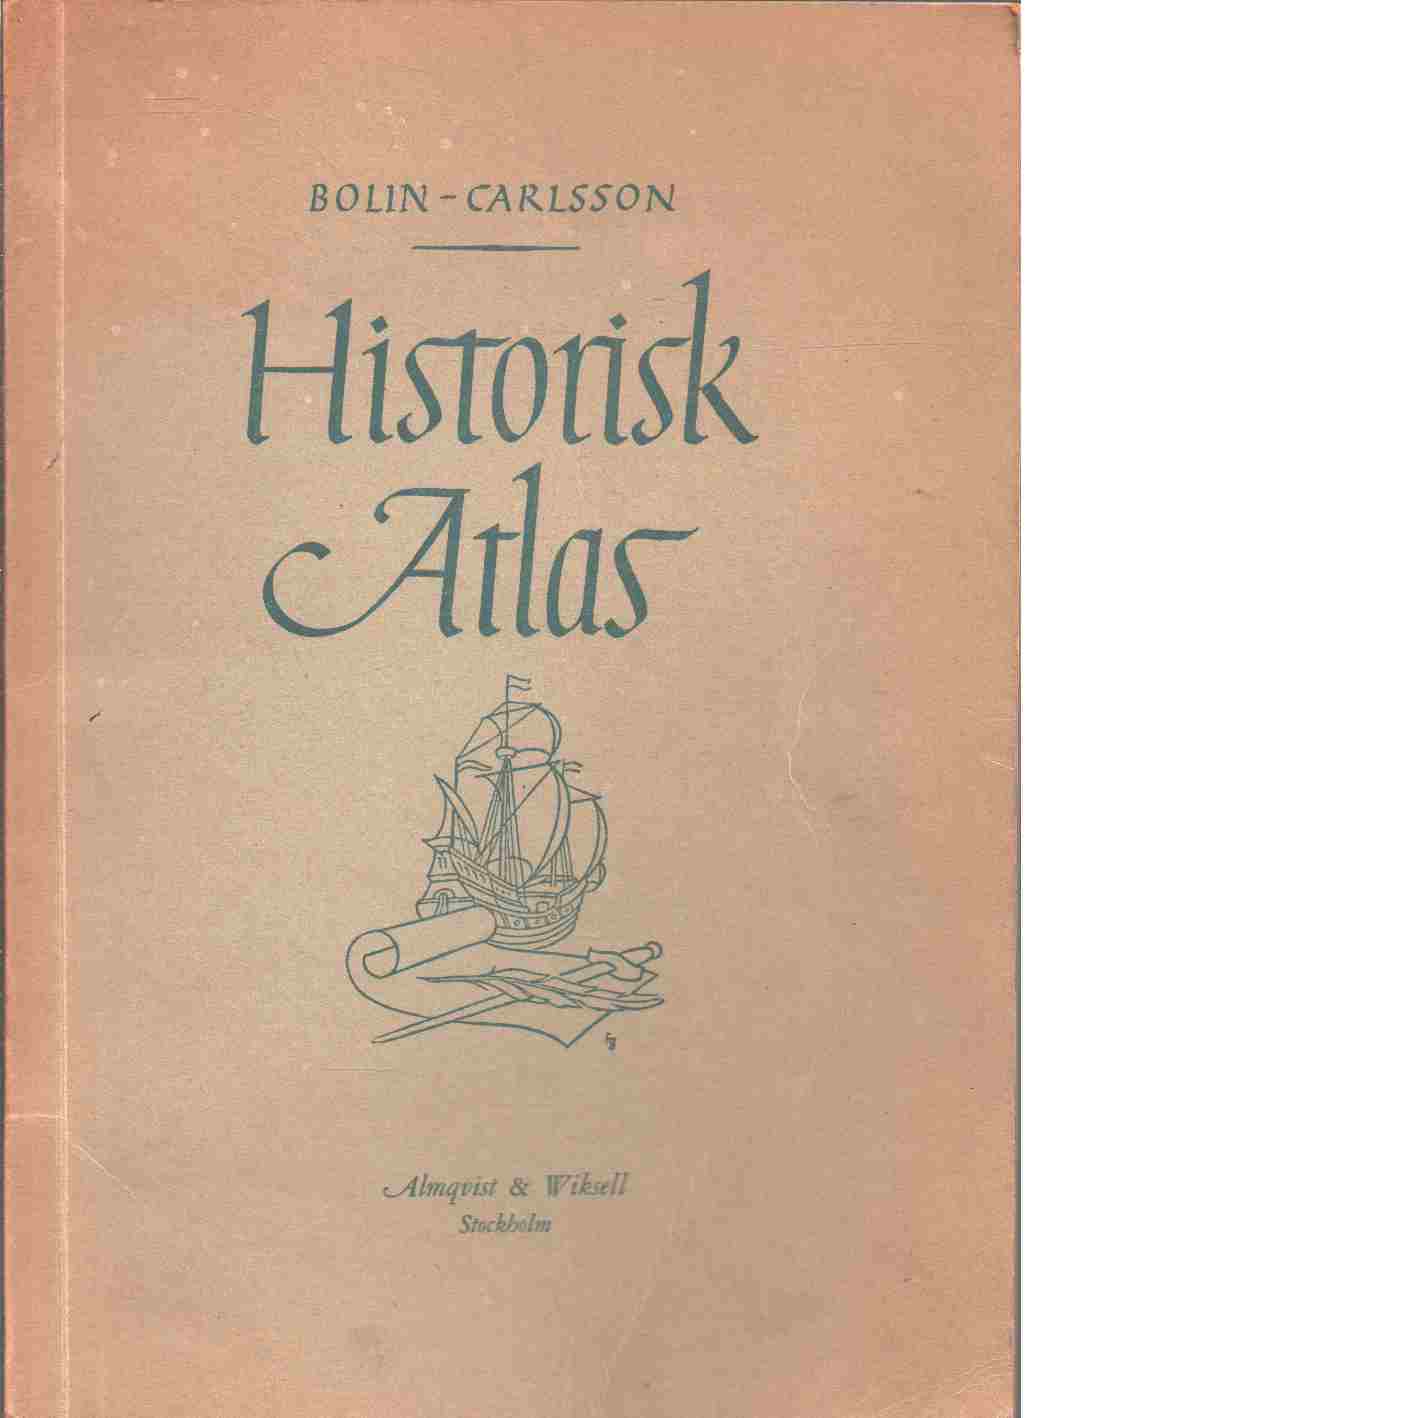 Historisk atlas - Bolin, Sture och Carlsson, Josef